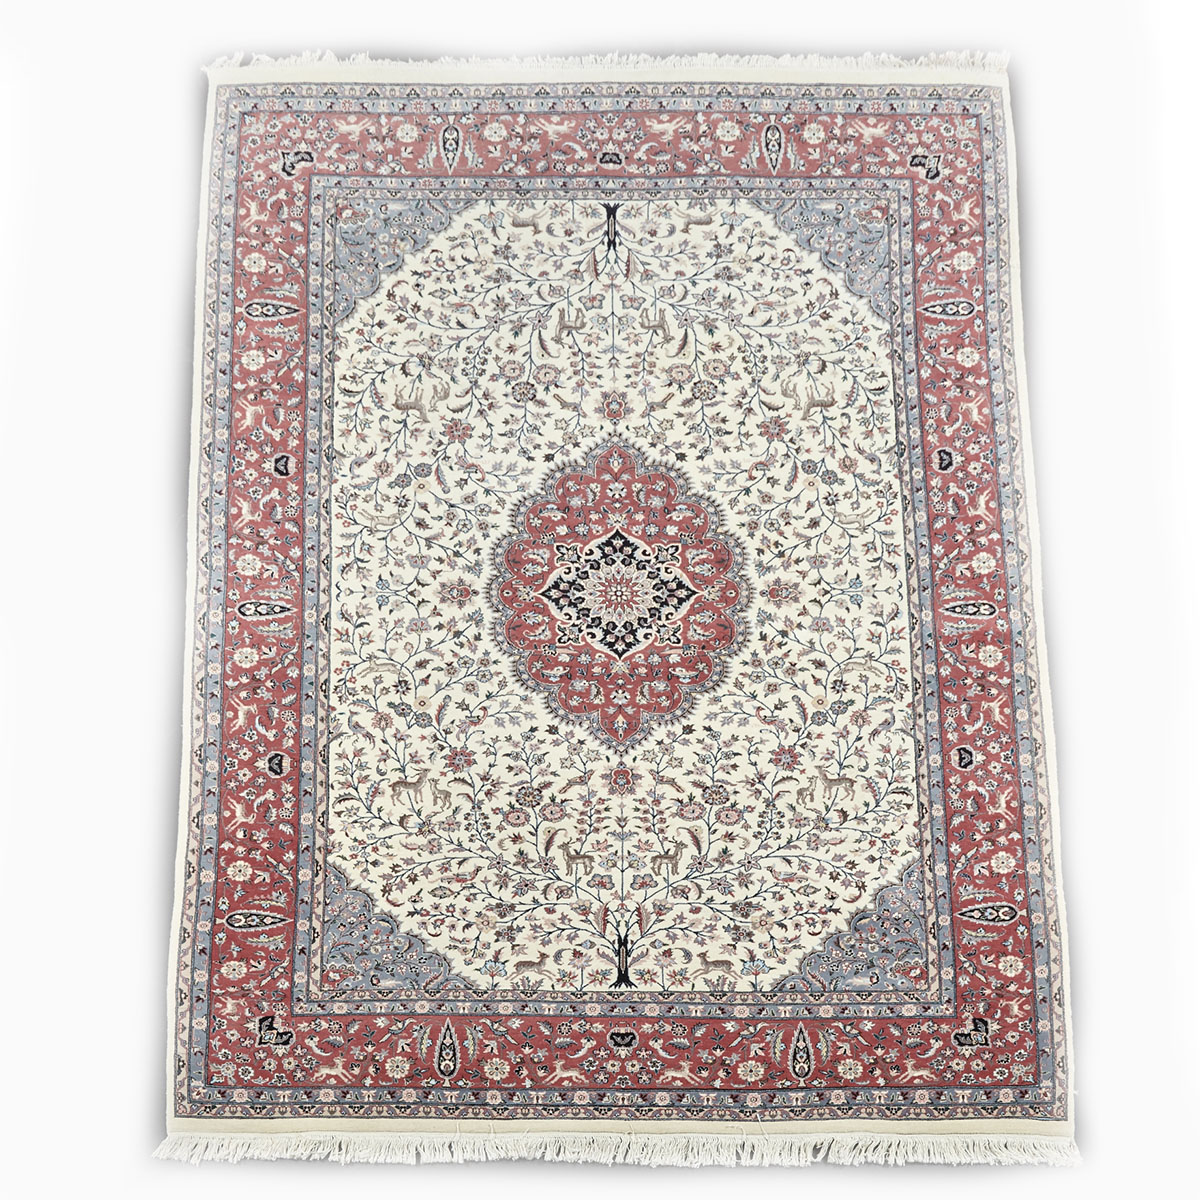 Indian Carpet, mid 20th century